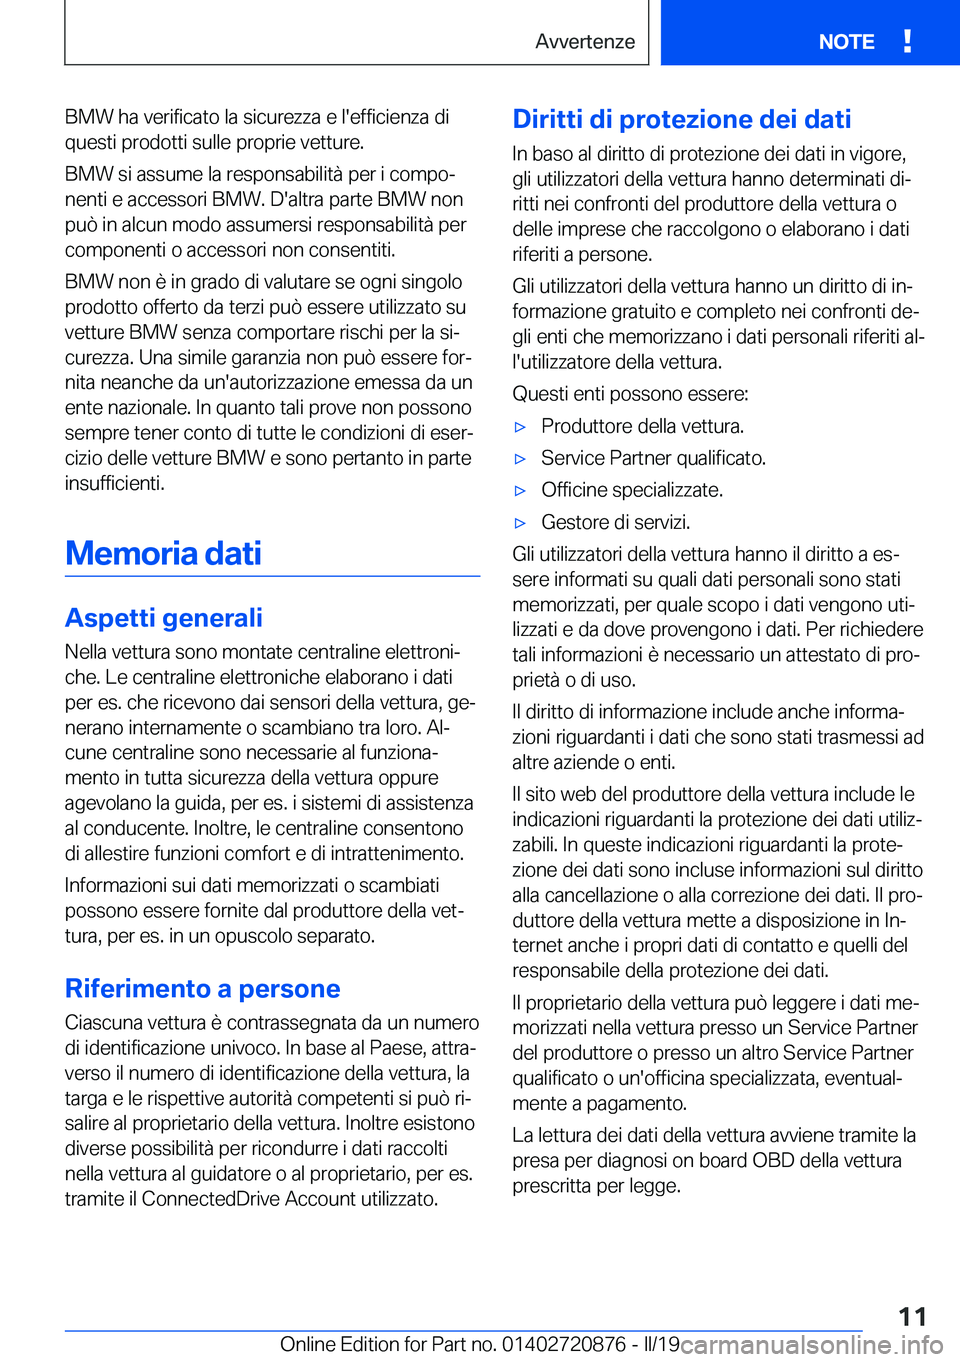 BMW X7 2019  Libretti Di Uso E manutenzione (in Italian) �B�M�W��h�a��v�e�r�i�f�i�c�a�t�o��l�a��s�i�c�u�r�e�z�z�a��e��l�'�e�f�f�i�c�i�e�n�z�a��d�i�q�u�e�s�t�i��p�r�o�d�o�t�t�i��s�u�l�l�e��p�r�o�p�r�i�e��v�e�t�t�u�r�e�.
�B�M�W��s�i��a�s�s�u�